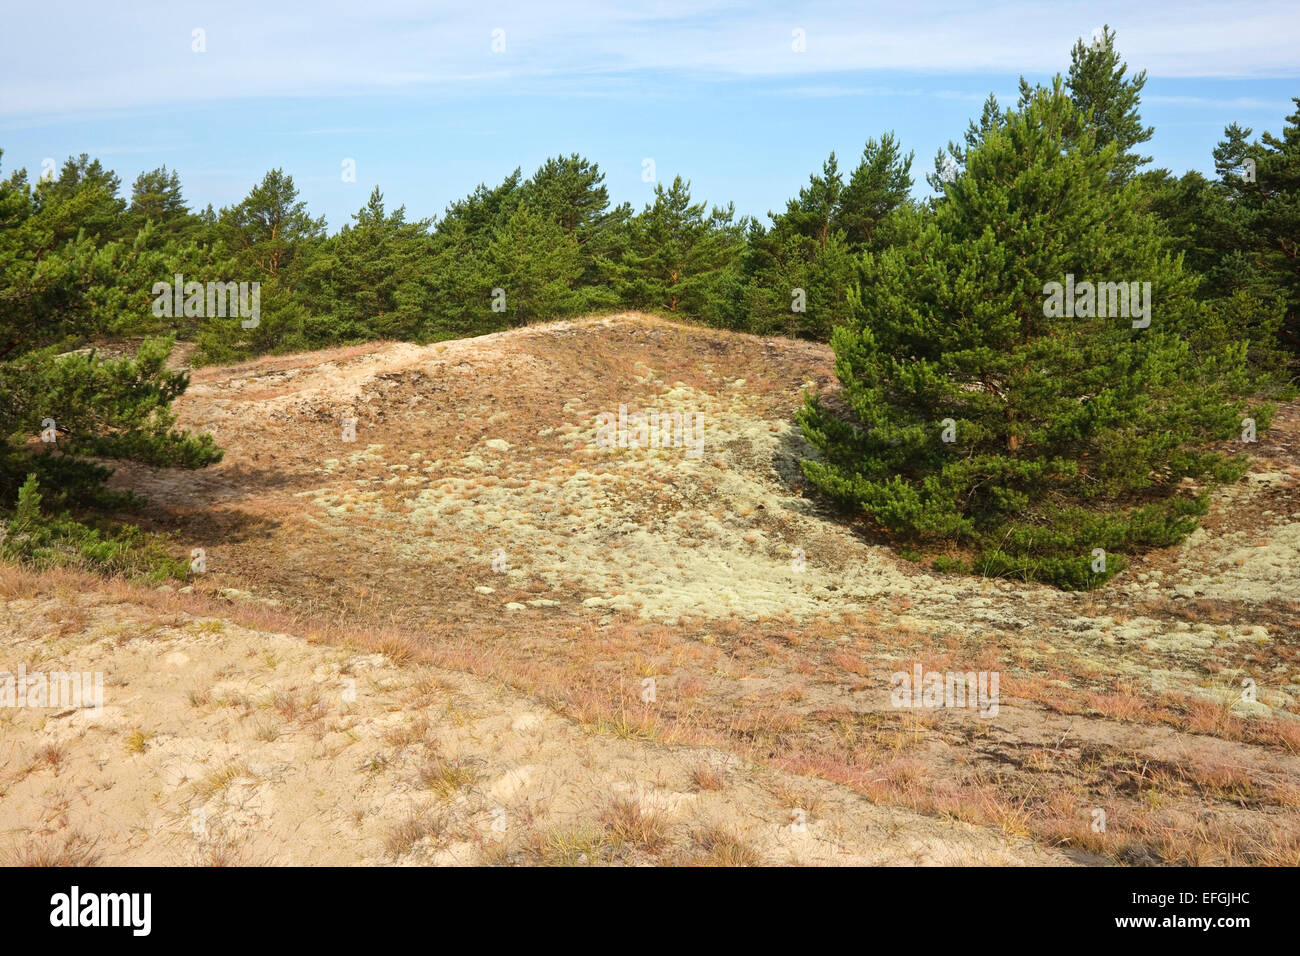 Paysage avec le pin sylvestre (Pinus sylvestris) de la réserve naturelle, Ullahau Fårö, Gotland. Ullahau plantées est une dune de la migration Banque D'Images